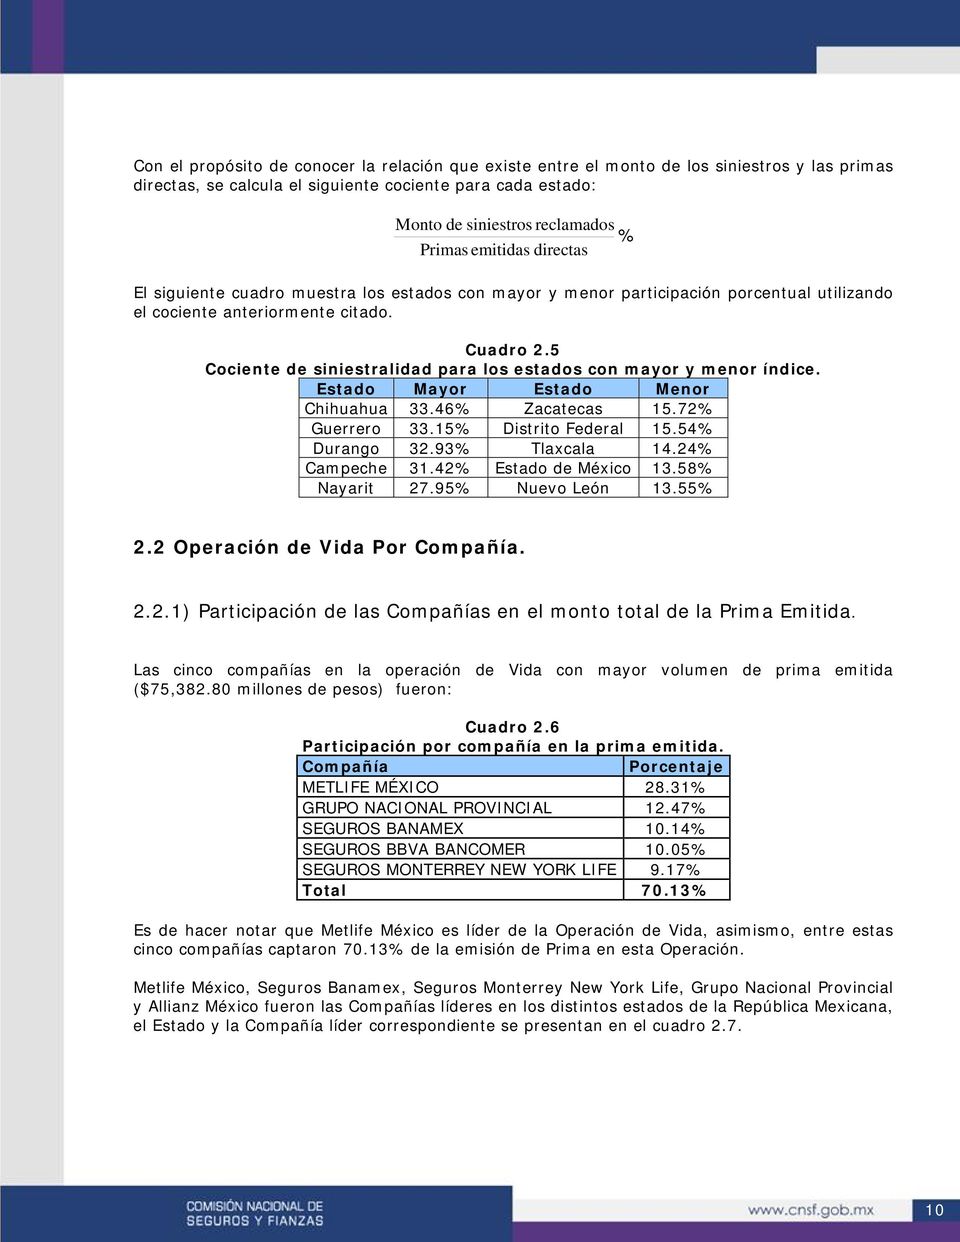 5 Cociente de siniestralidad para los estados con mayor y menor índice. Estado Mayor Estado Menor Chihuahua 33.46% Zacatecas 15.72% Guerrero 33.15% Distrito Federal 15.54% Durango 32.93% Tlaxcala 14.